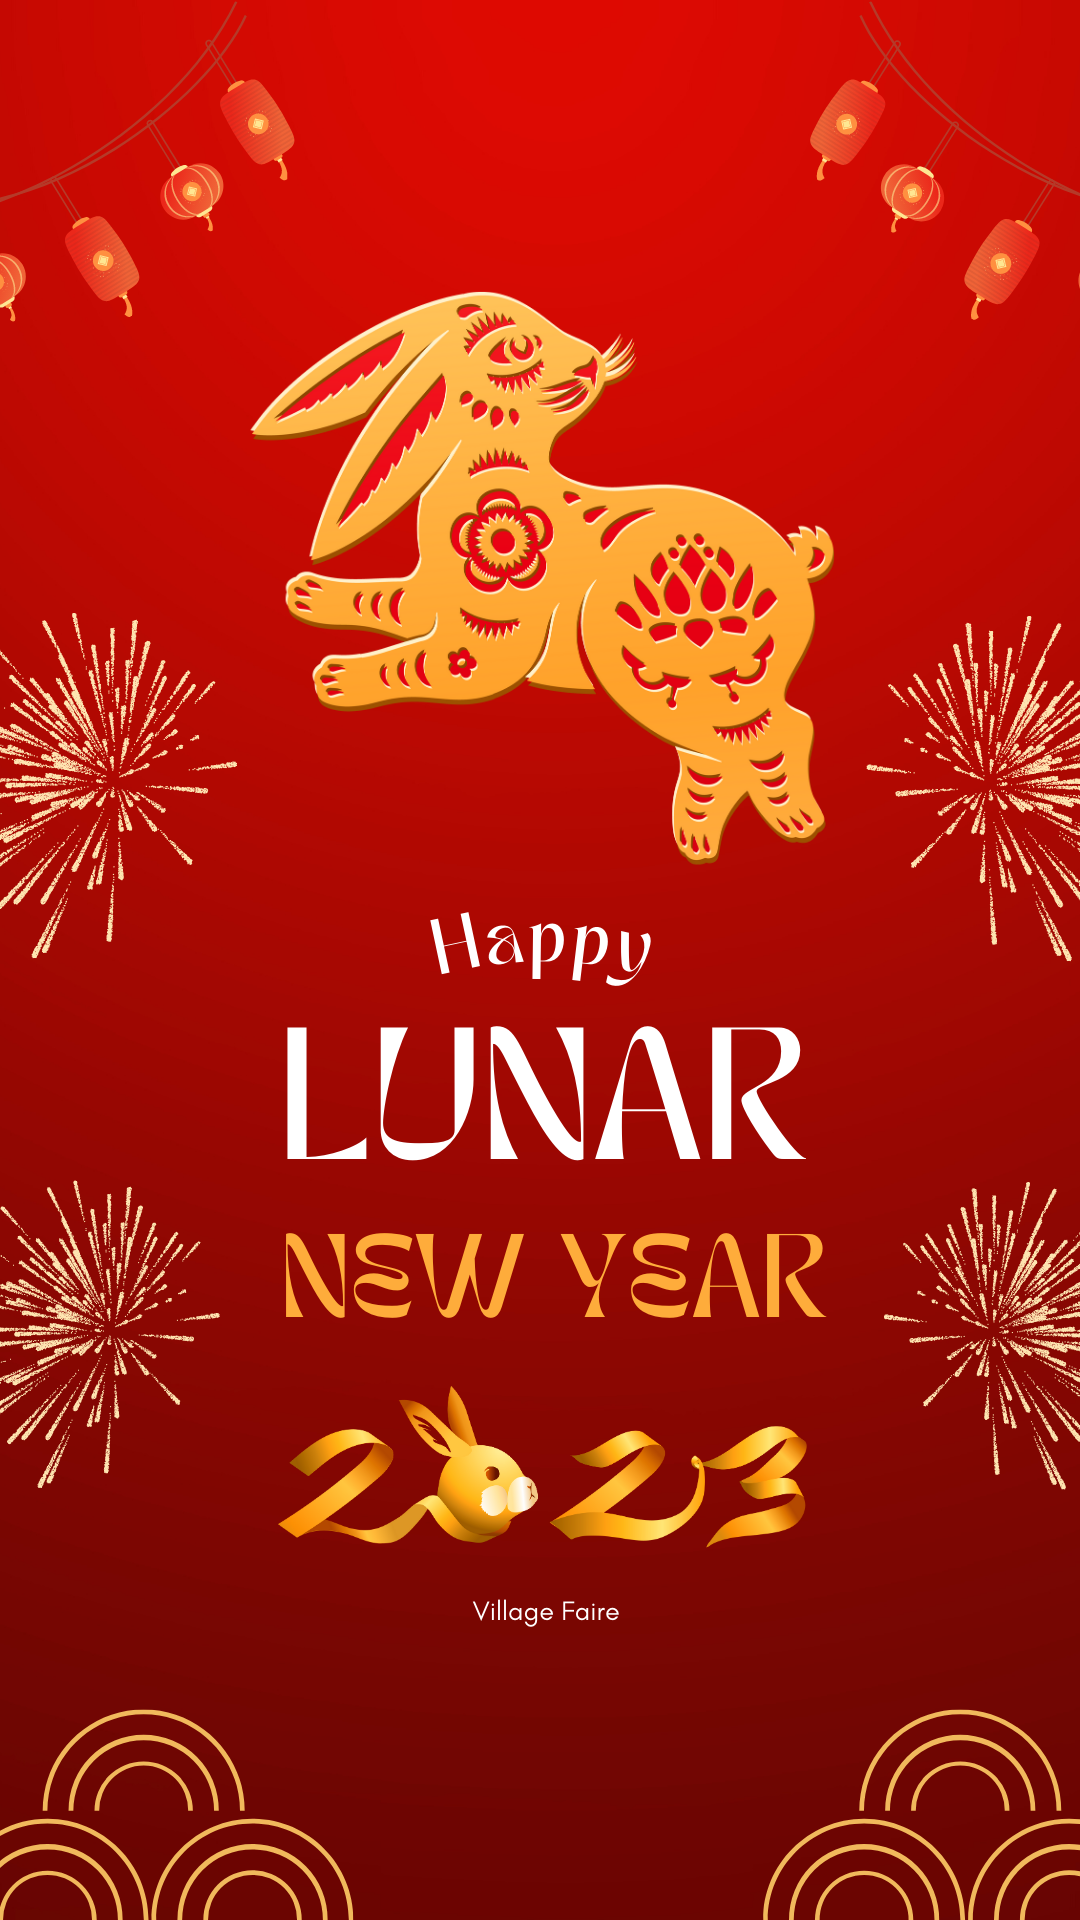 Lunar New Year 2023 